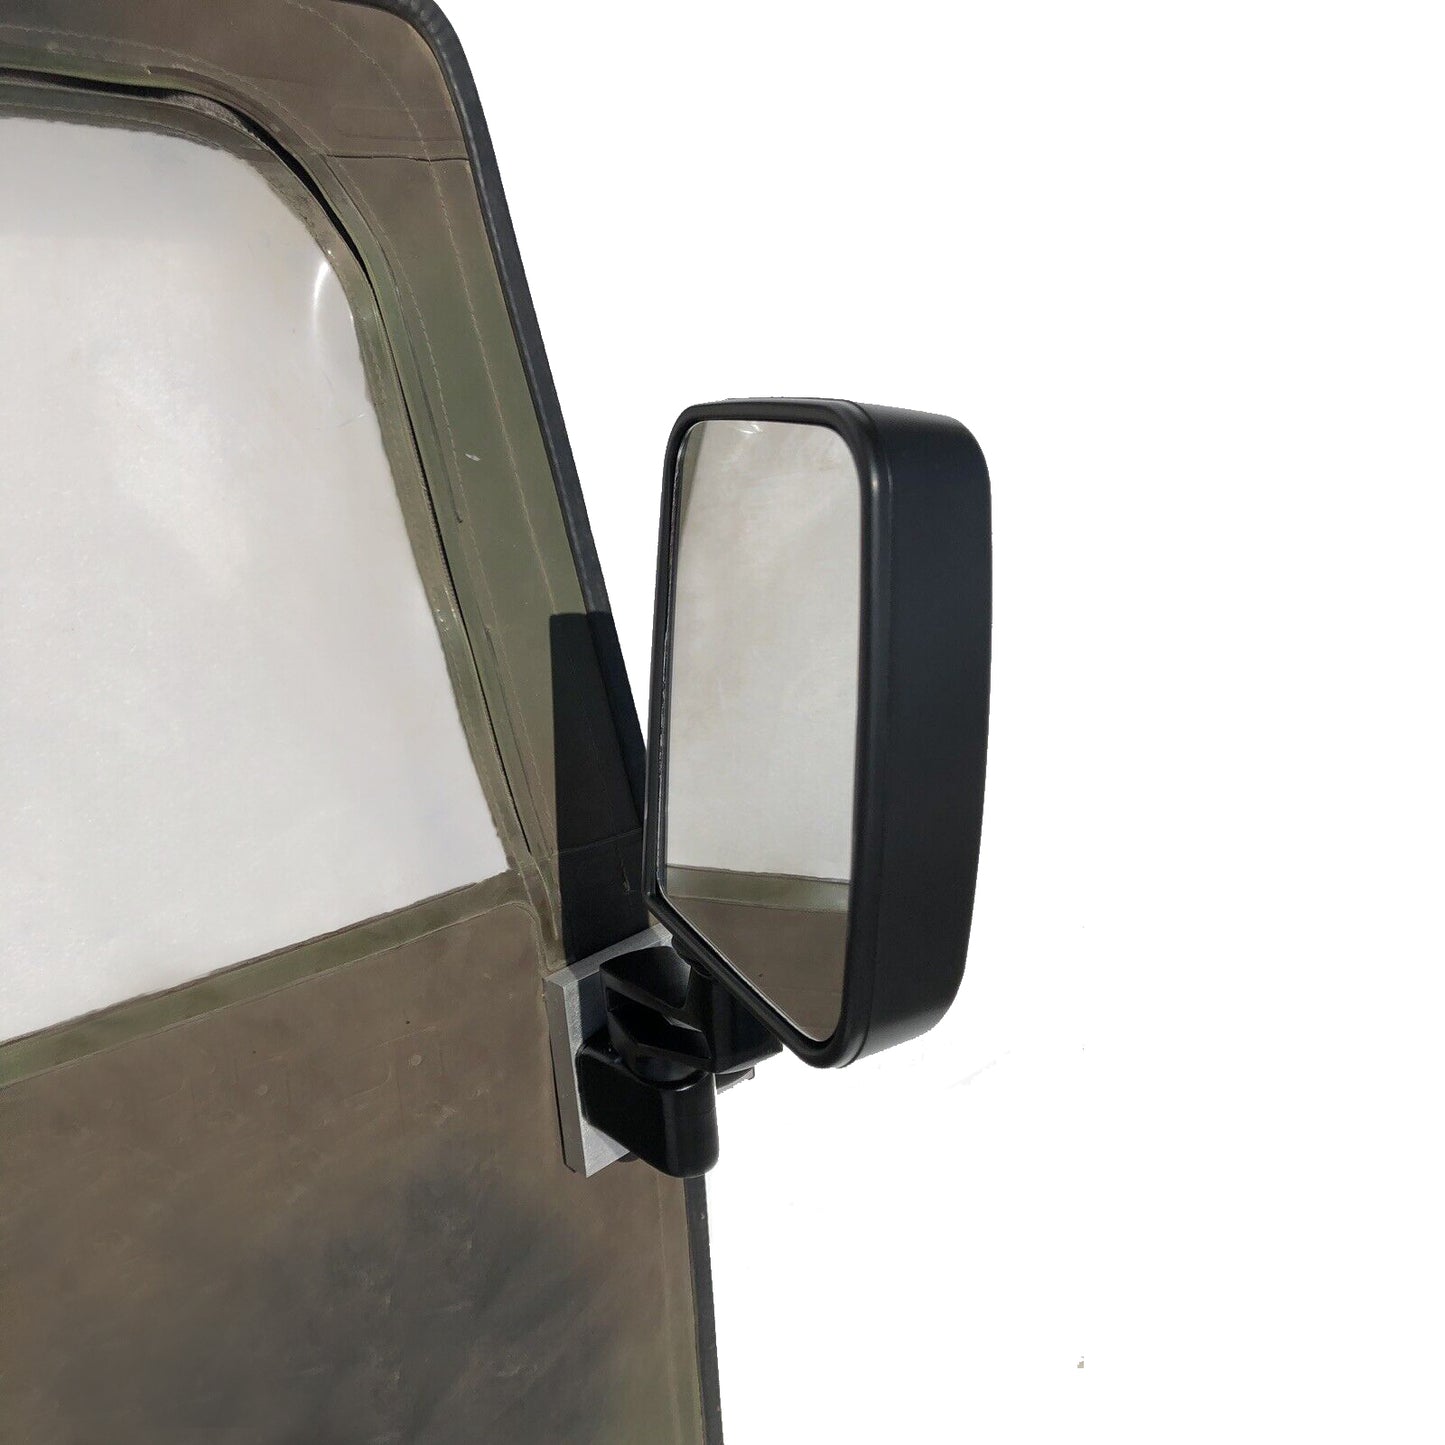 适配器板对（无镜子）用于在帆布软门上安装2镜